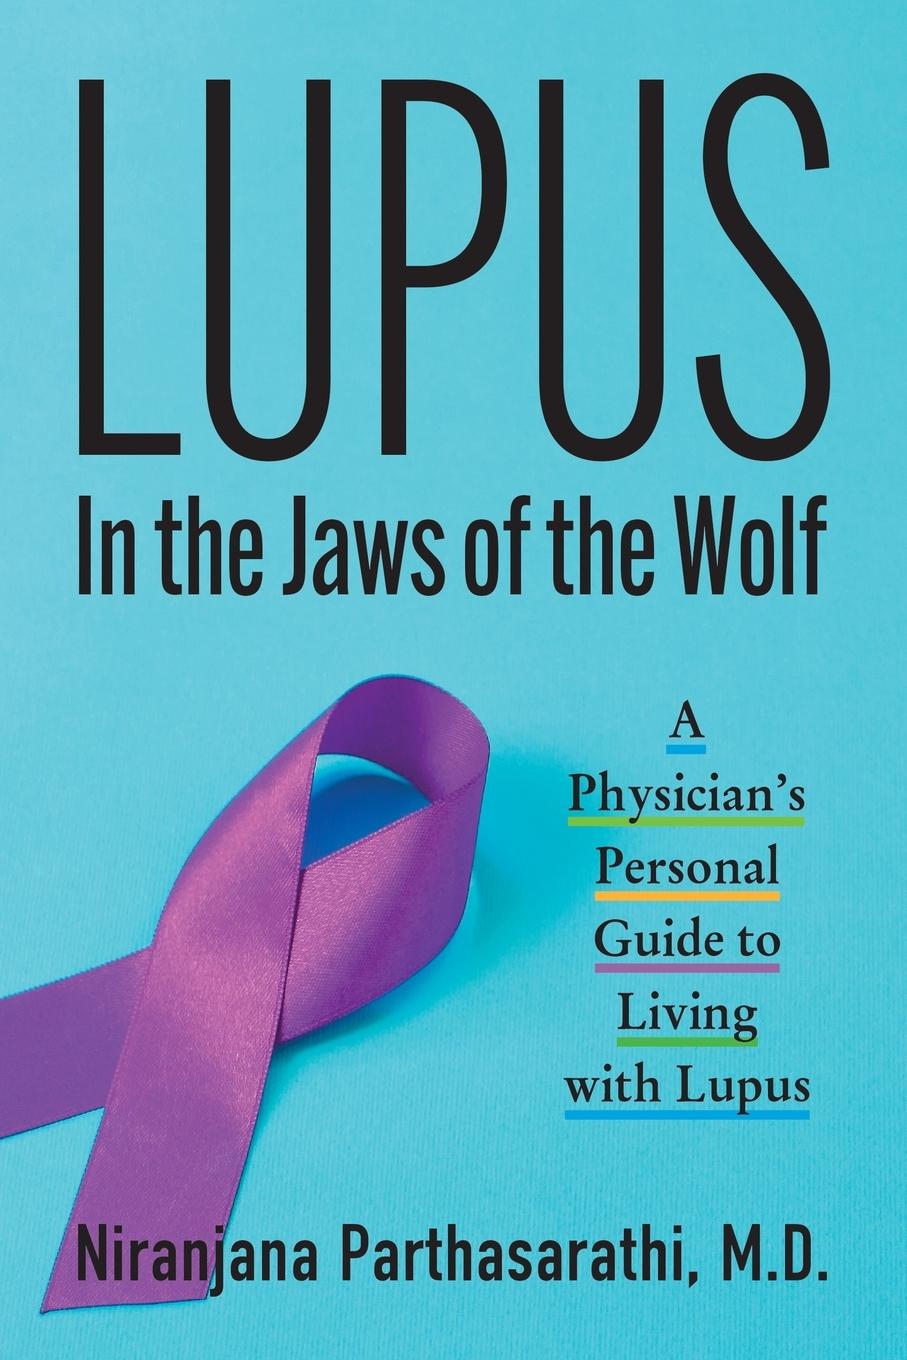 Kniha Lupus 